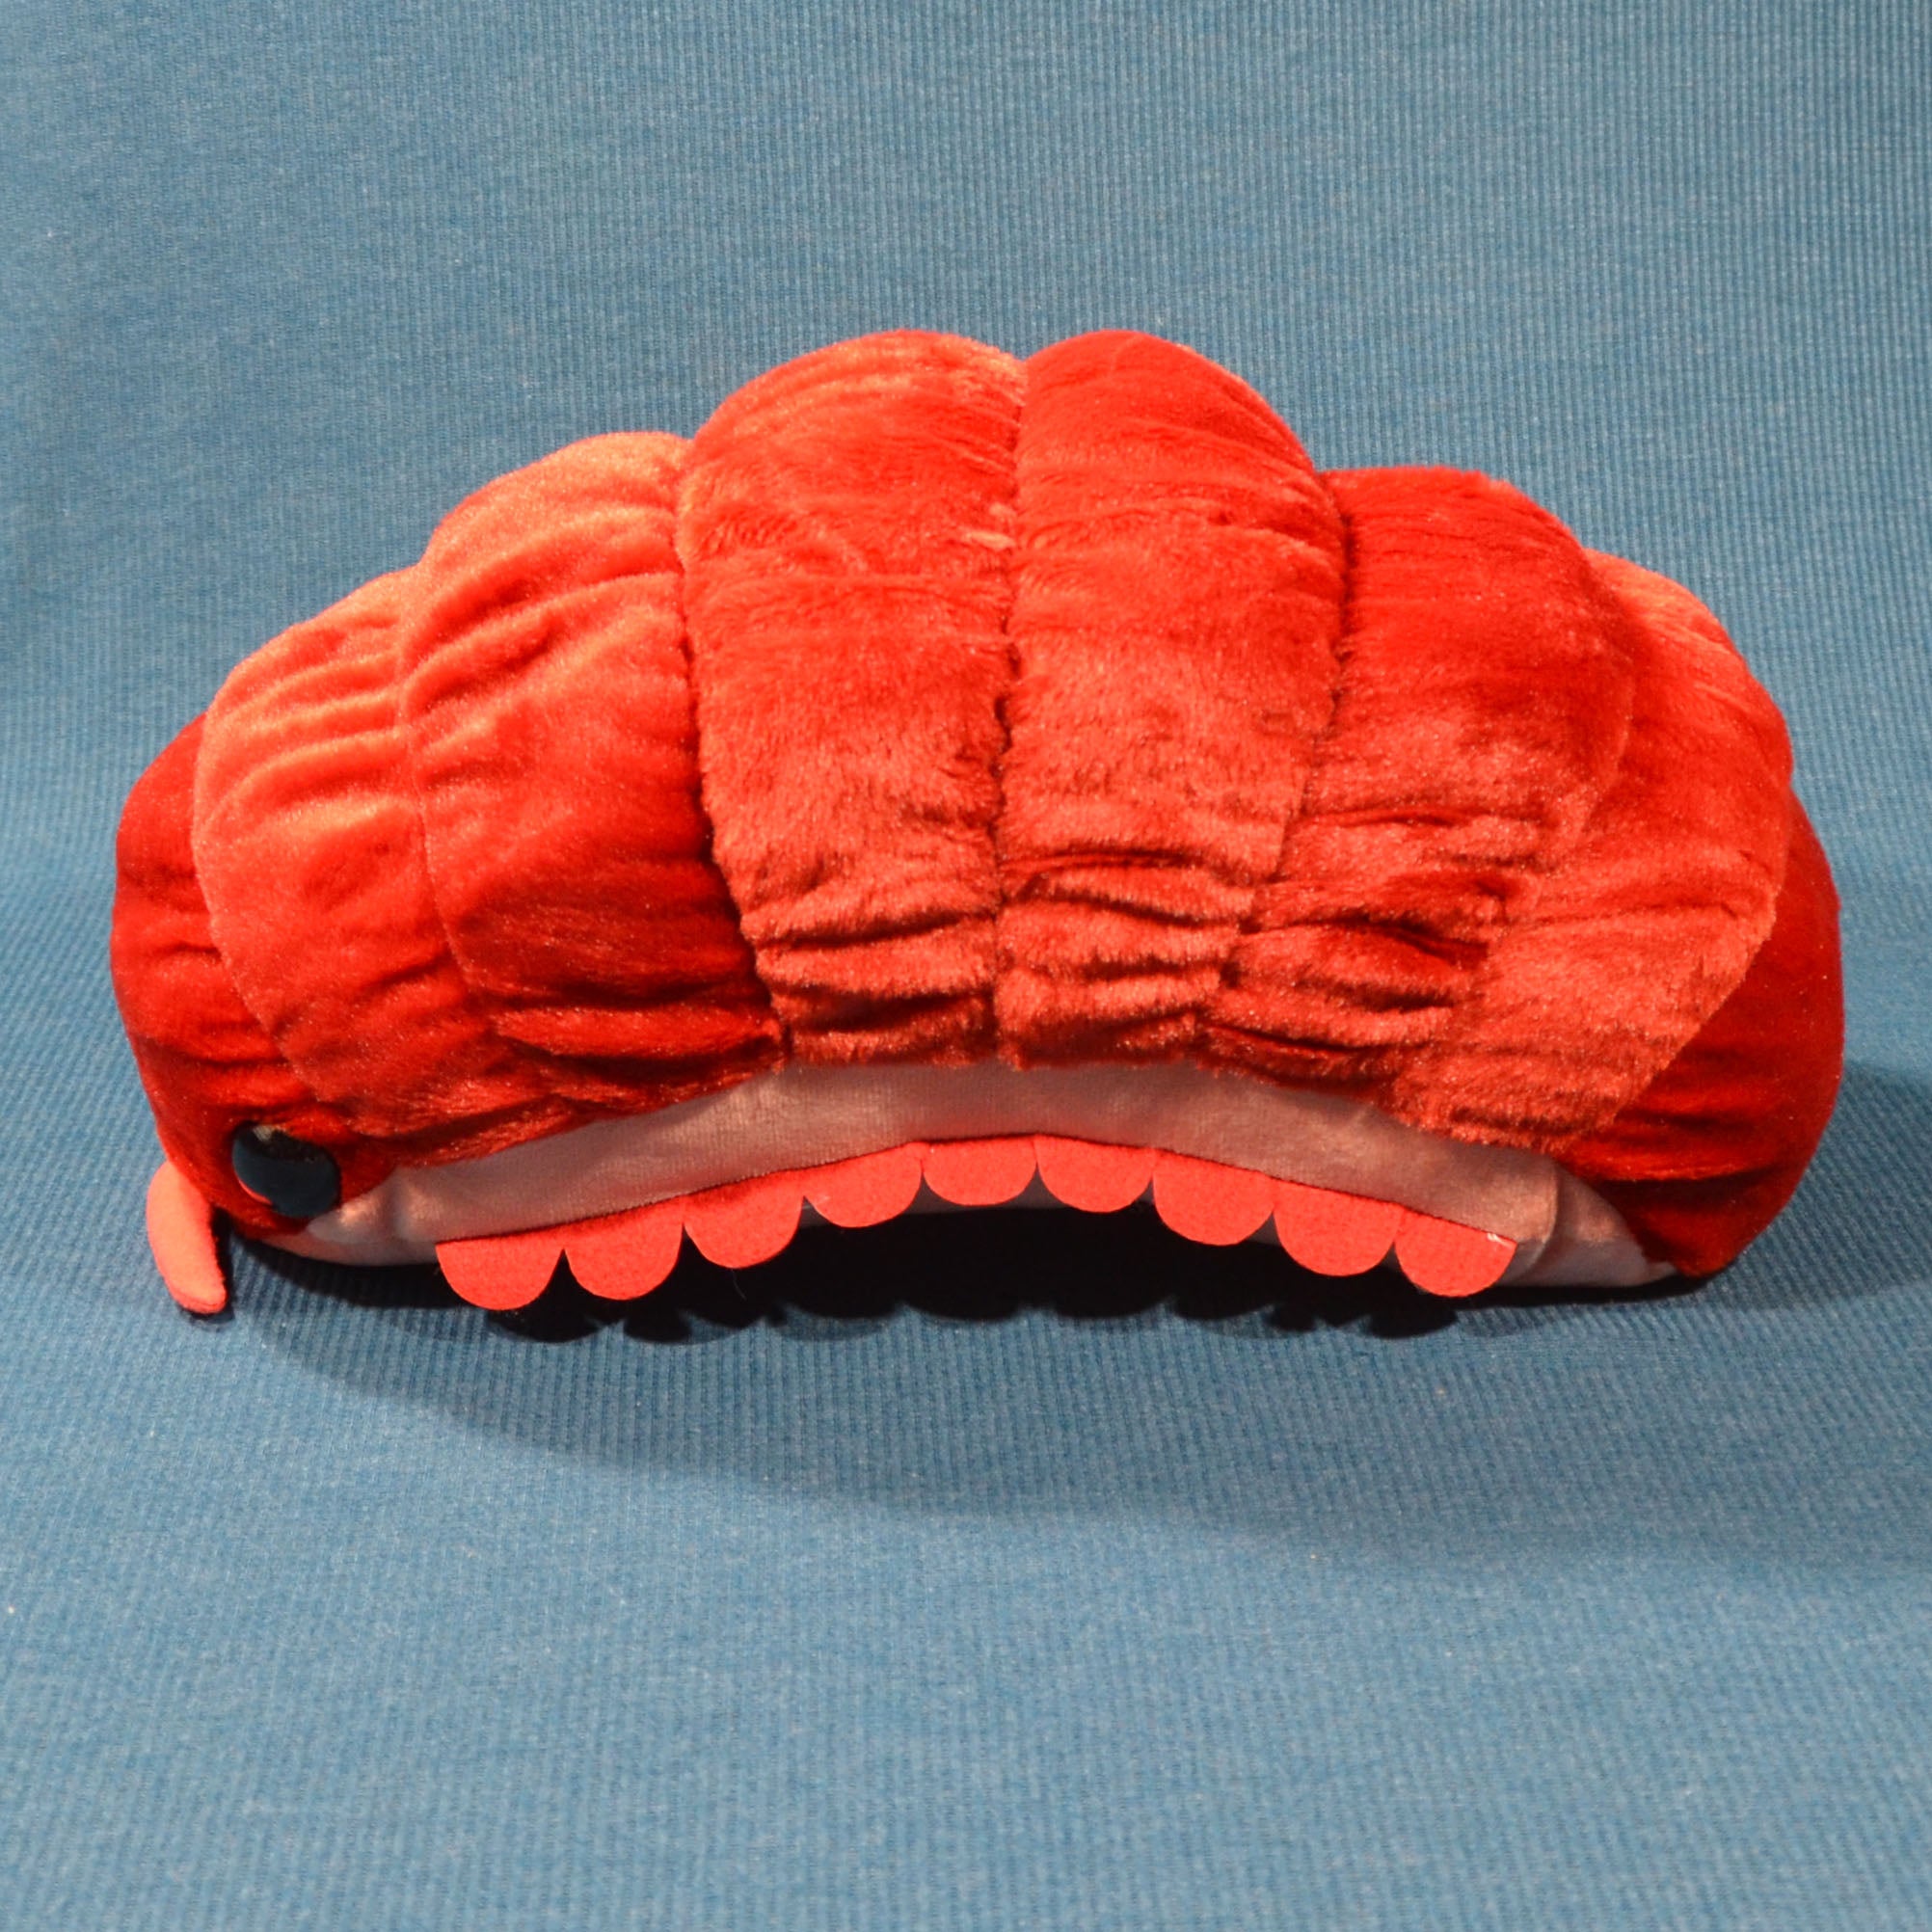 Pillbug/Isopod - Red (Large)